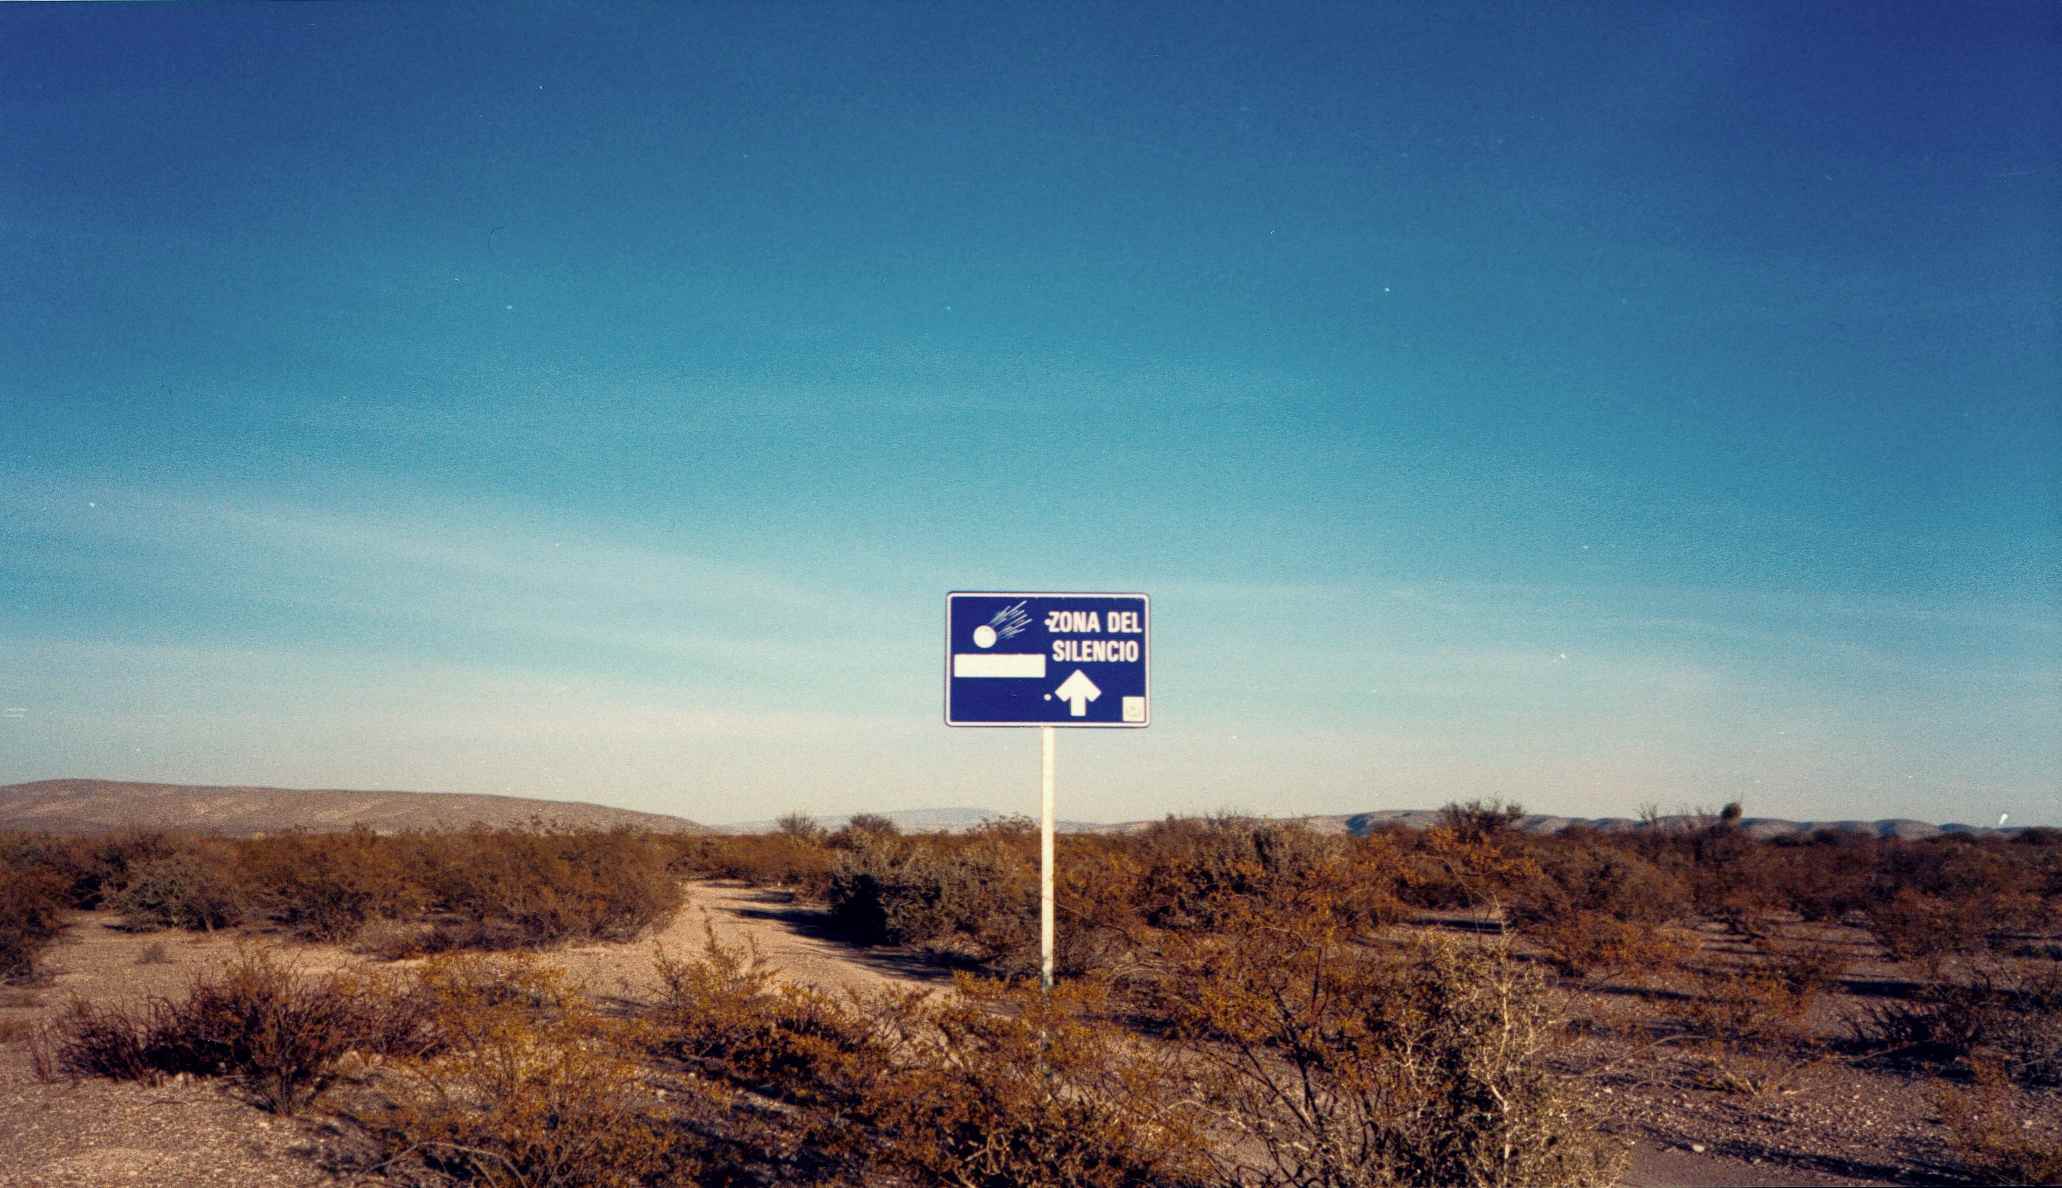 Зона тишины, Зона-дель-Силенсио, пустыня Чиуауа, Северная Мексика